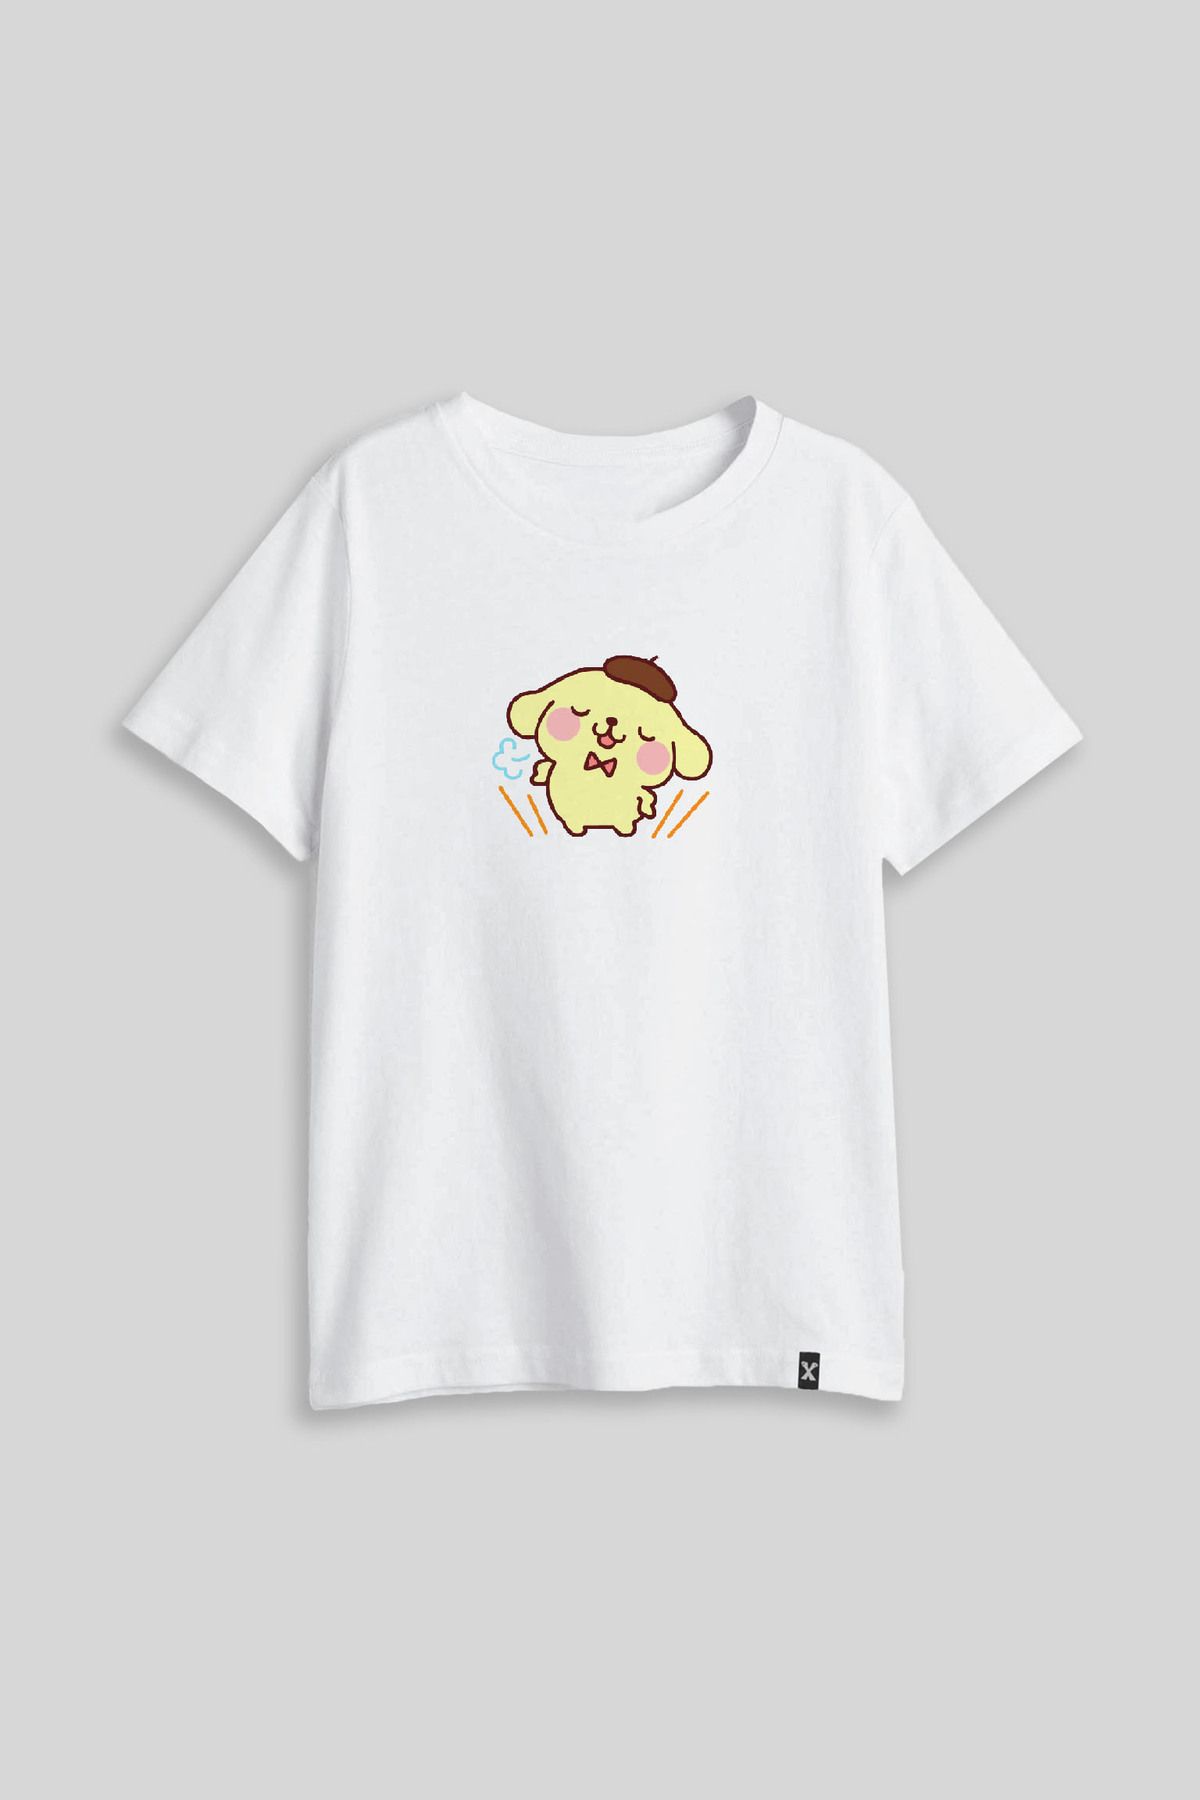 Darkia Hello Kitty Pompompurin Özel Tasarım Baskılı Çocuk Tişört T-shirt